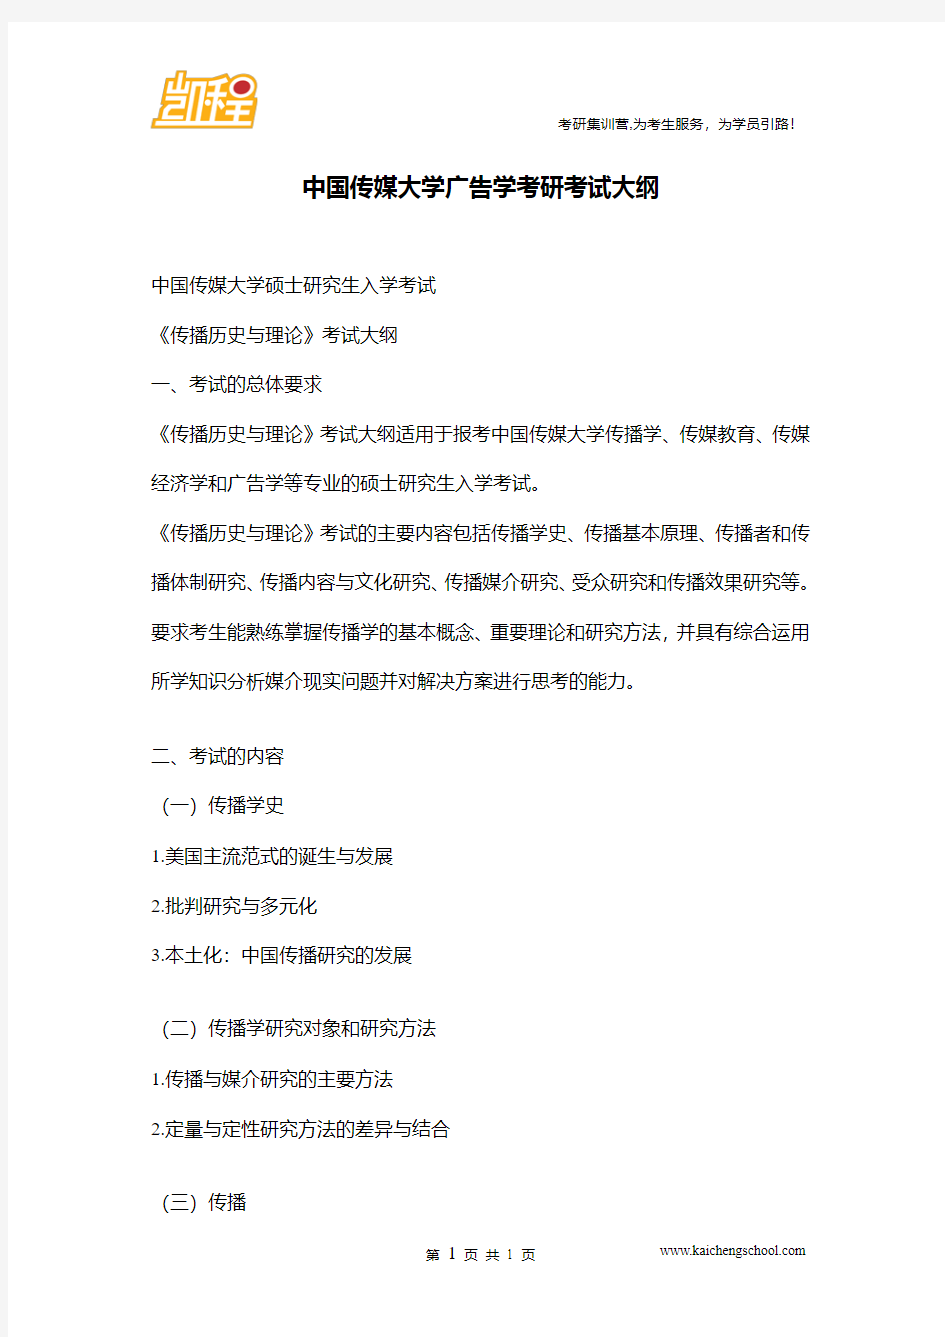 中国传媒大学广告学考研考试大纲